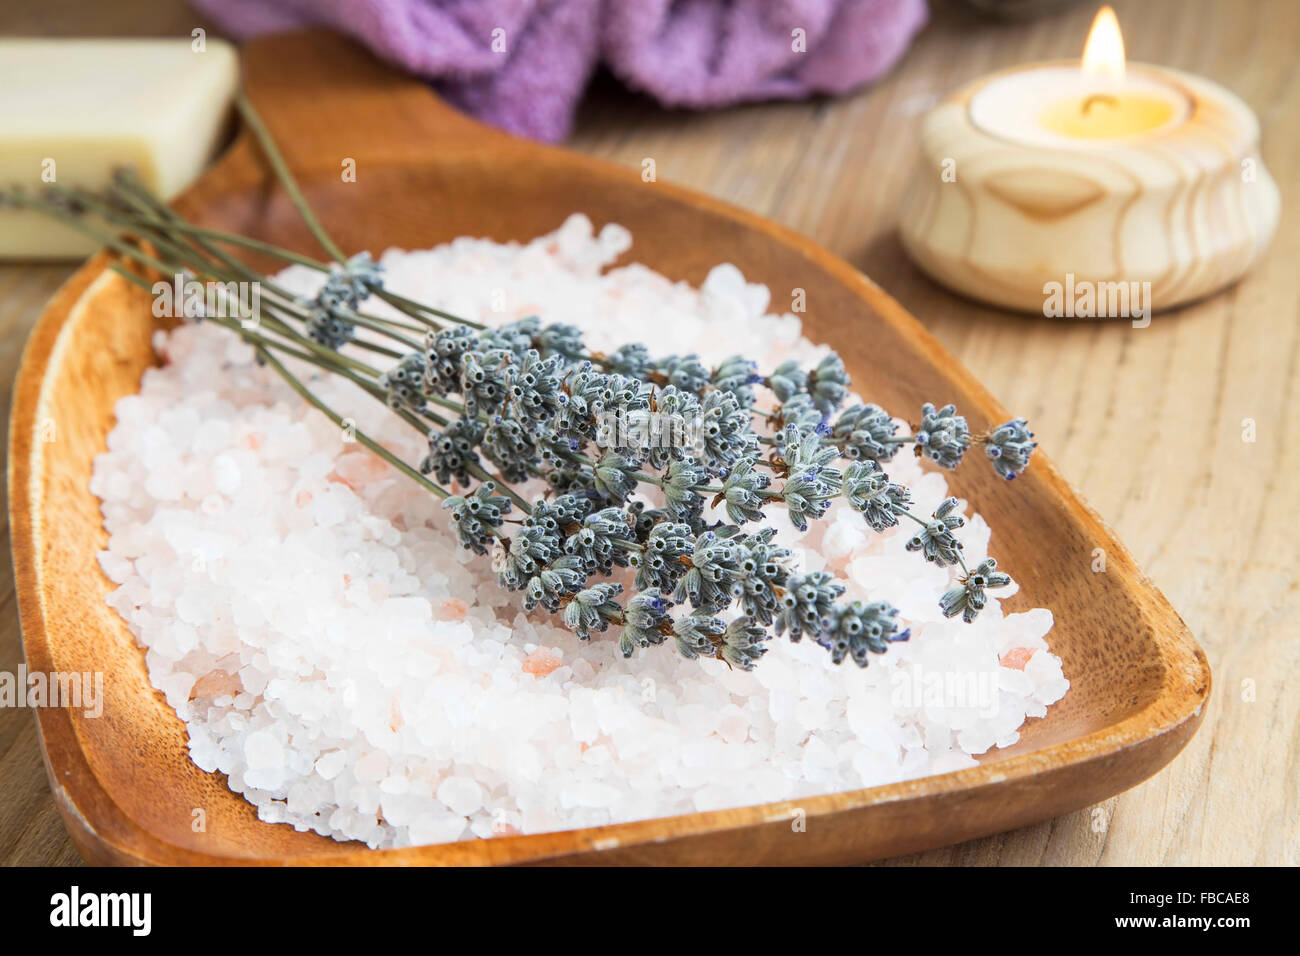 Spa-Stillleben-Einstellung mit Meer-Salz und Lavendel Blumen in einer hölzernen Platte Stockfoto